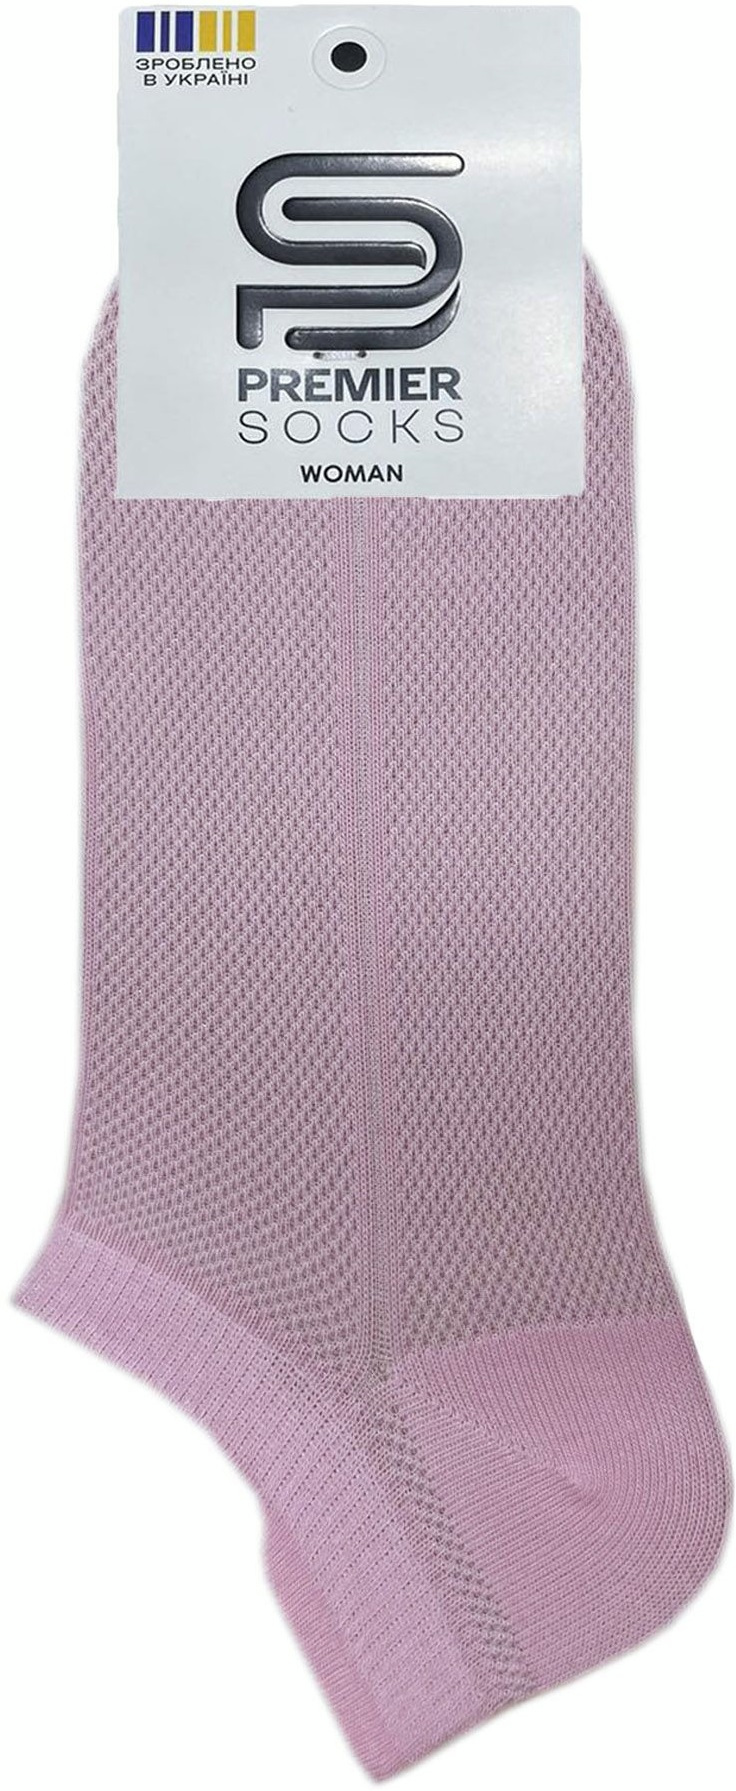 Шкарпетки жіночі Premier Socks 36-40 1 пара рожеві (4820163318776)фото2